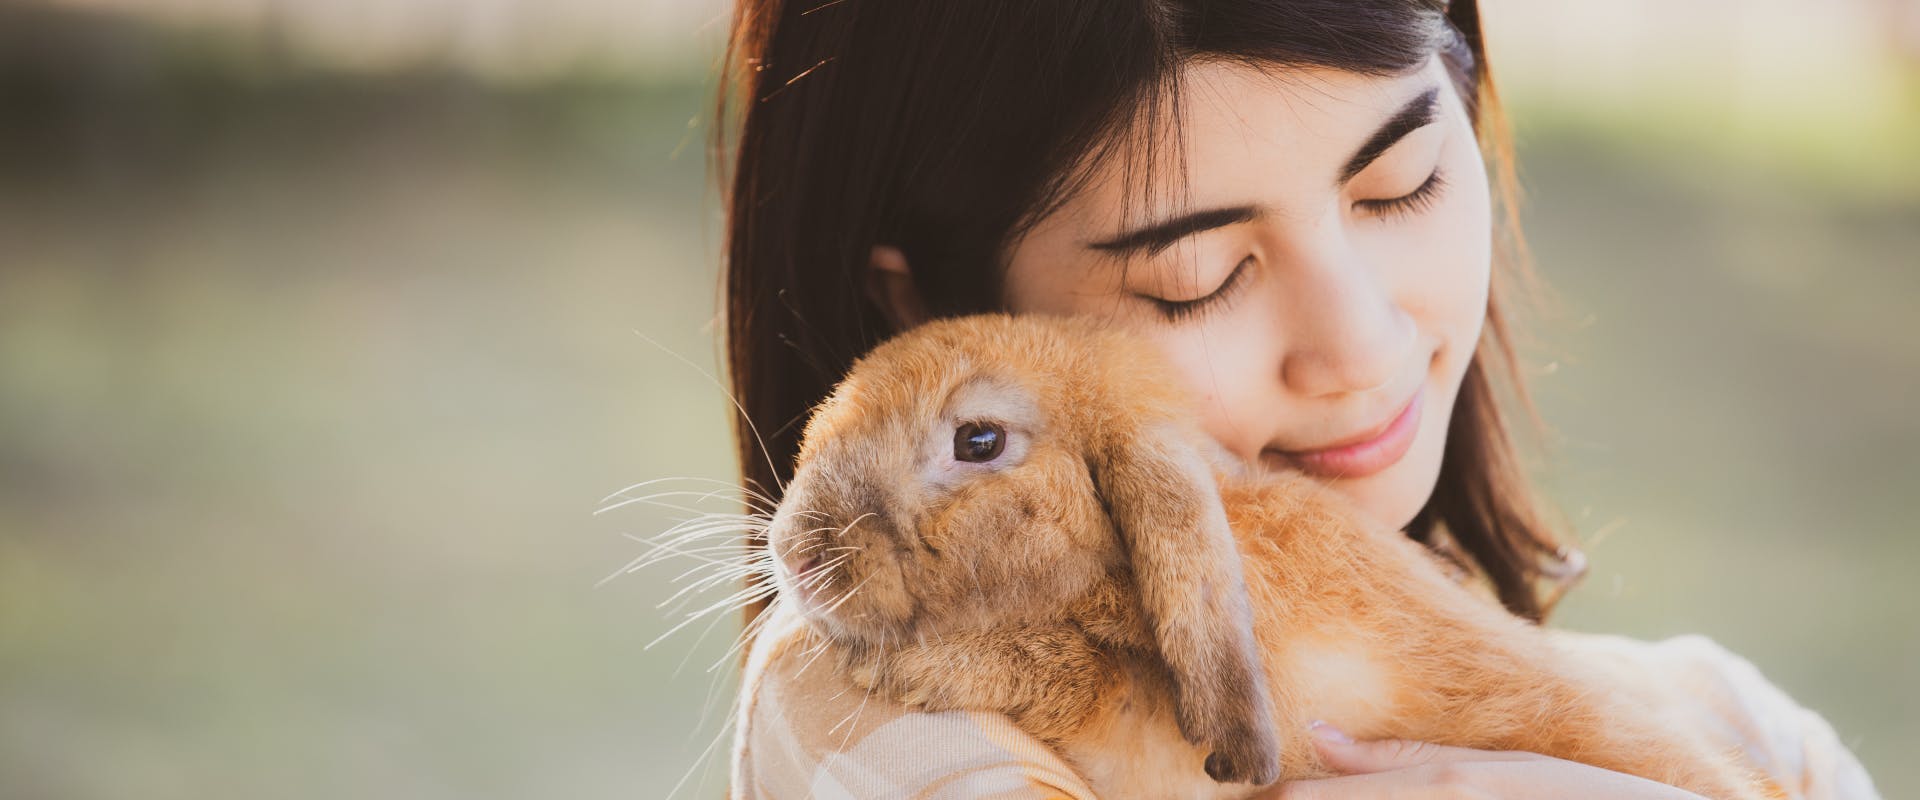 A woman hugs a rabbit.